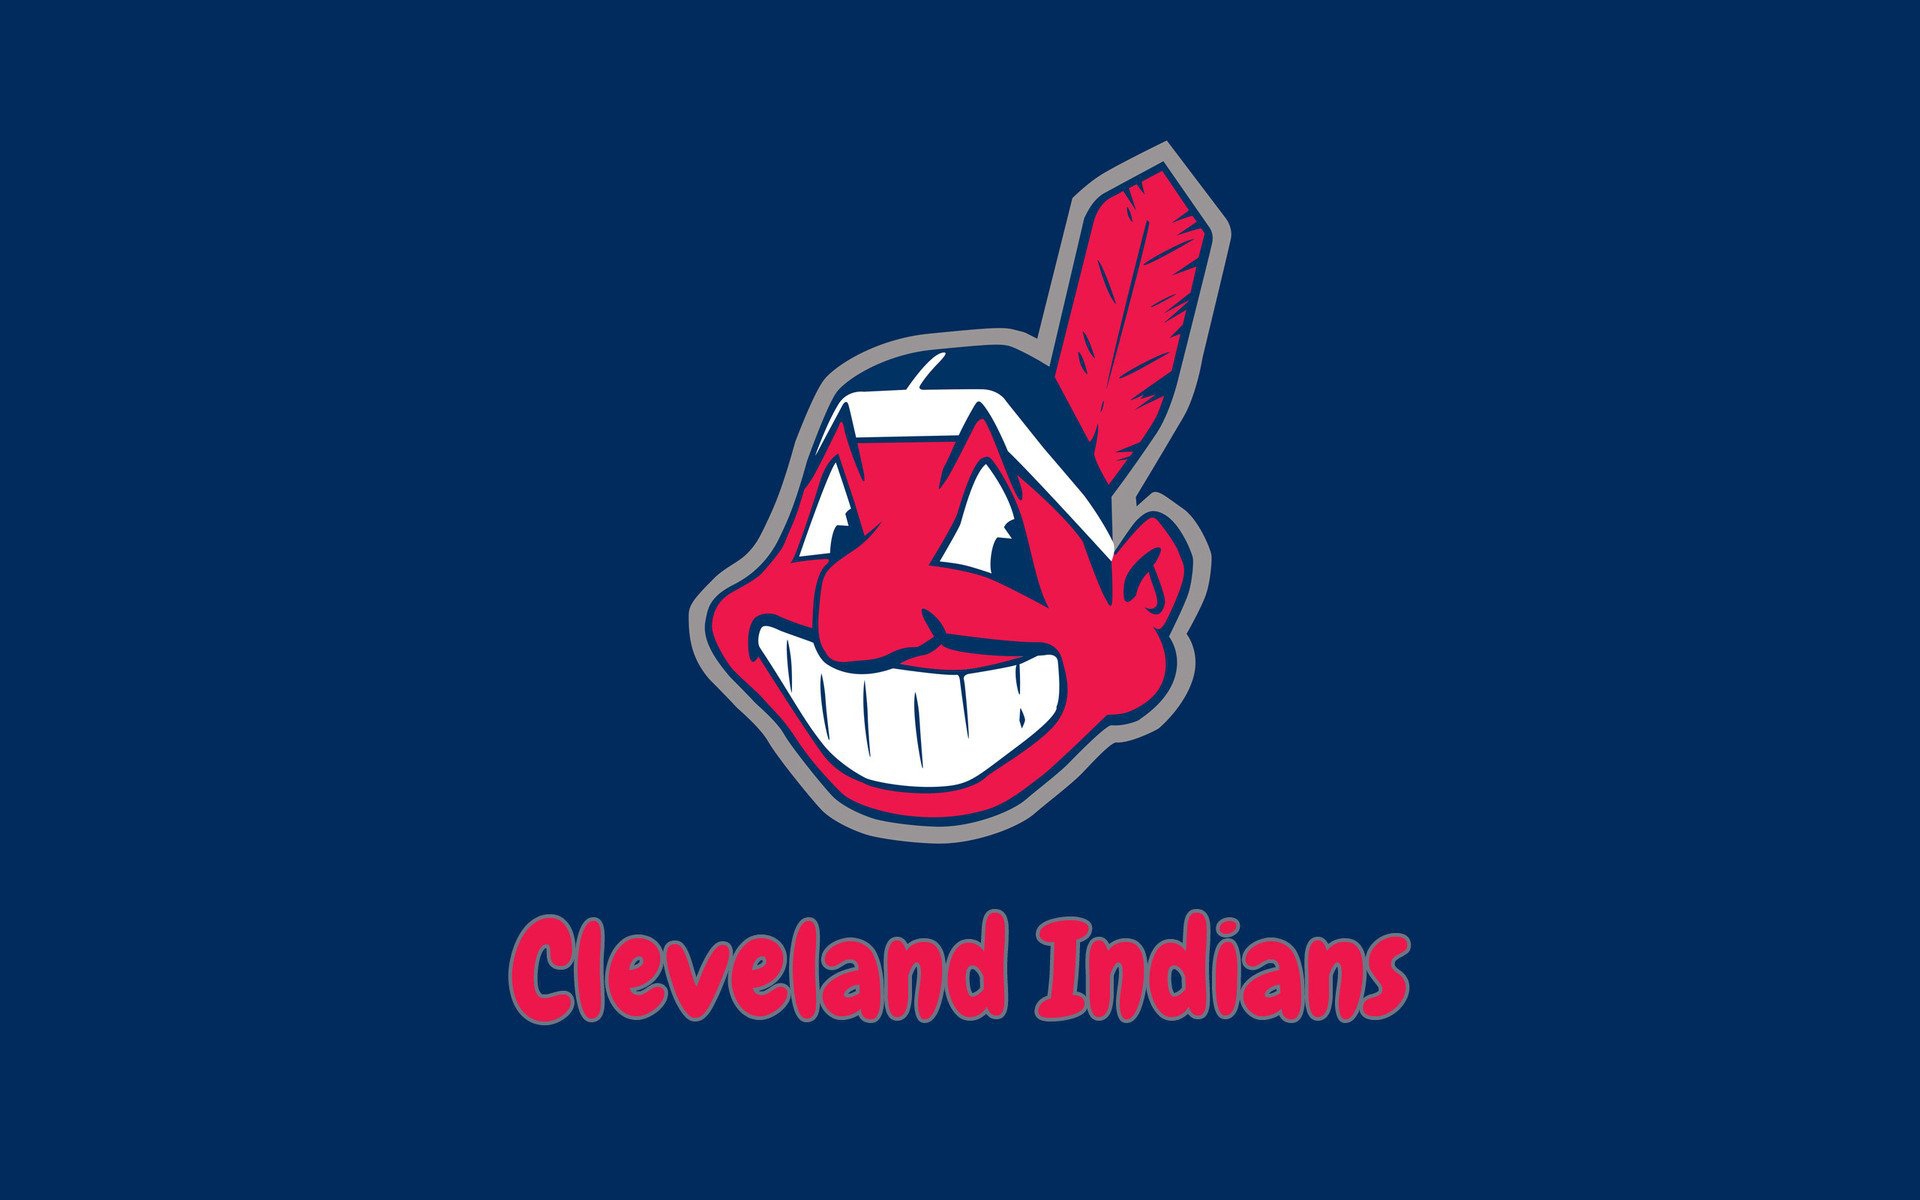 Cleveland Indians Wallpaper for Desktop.